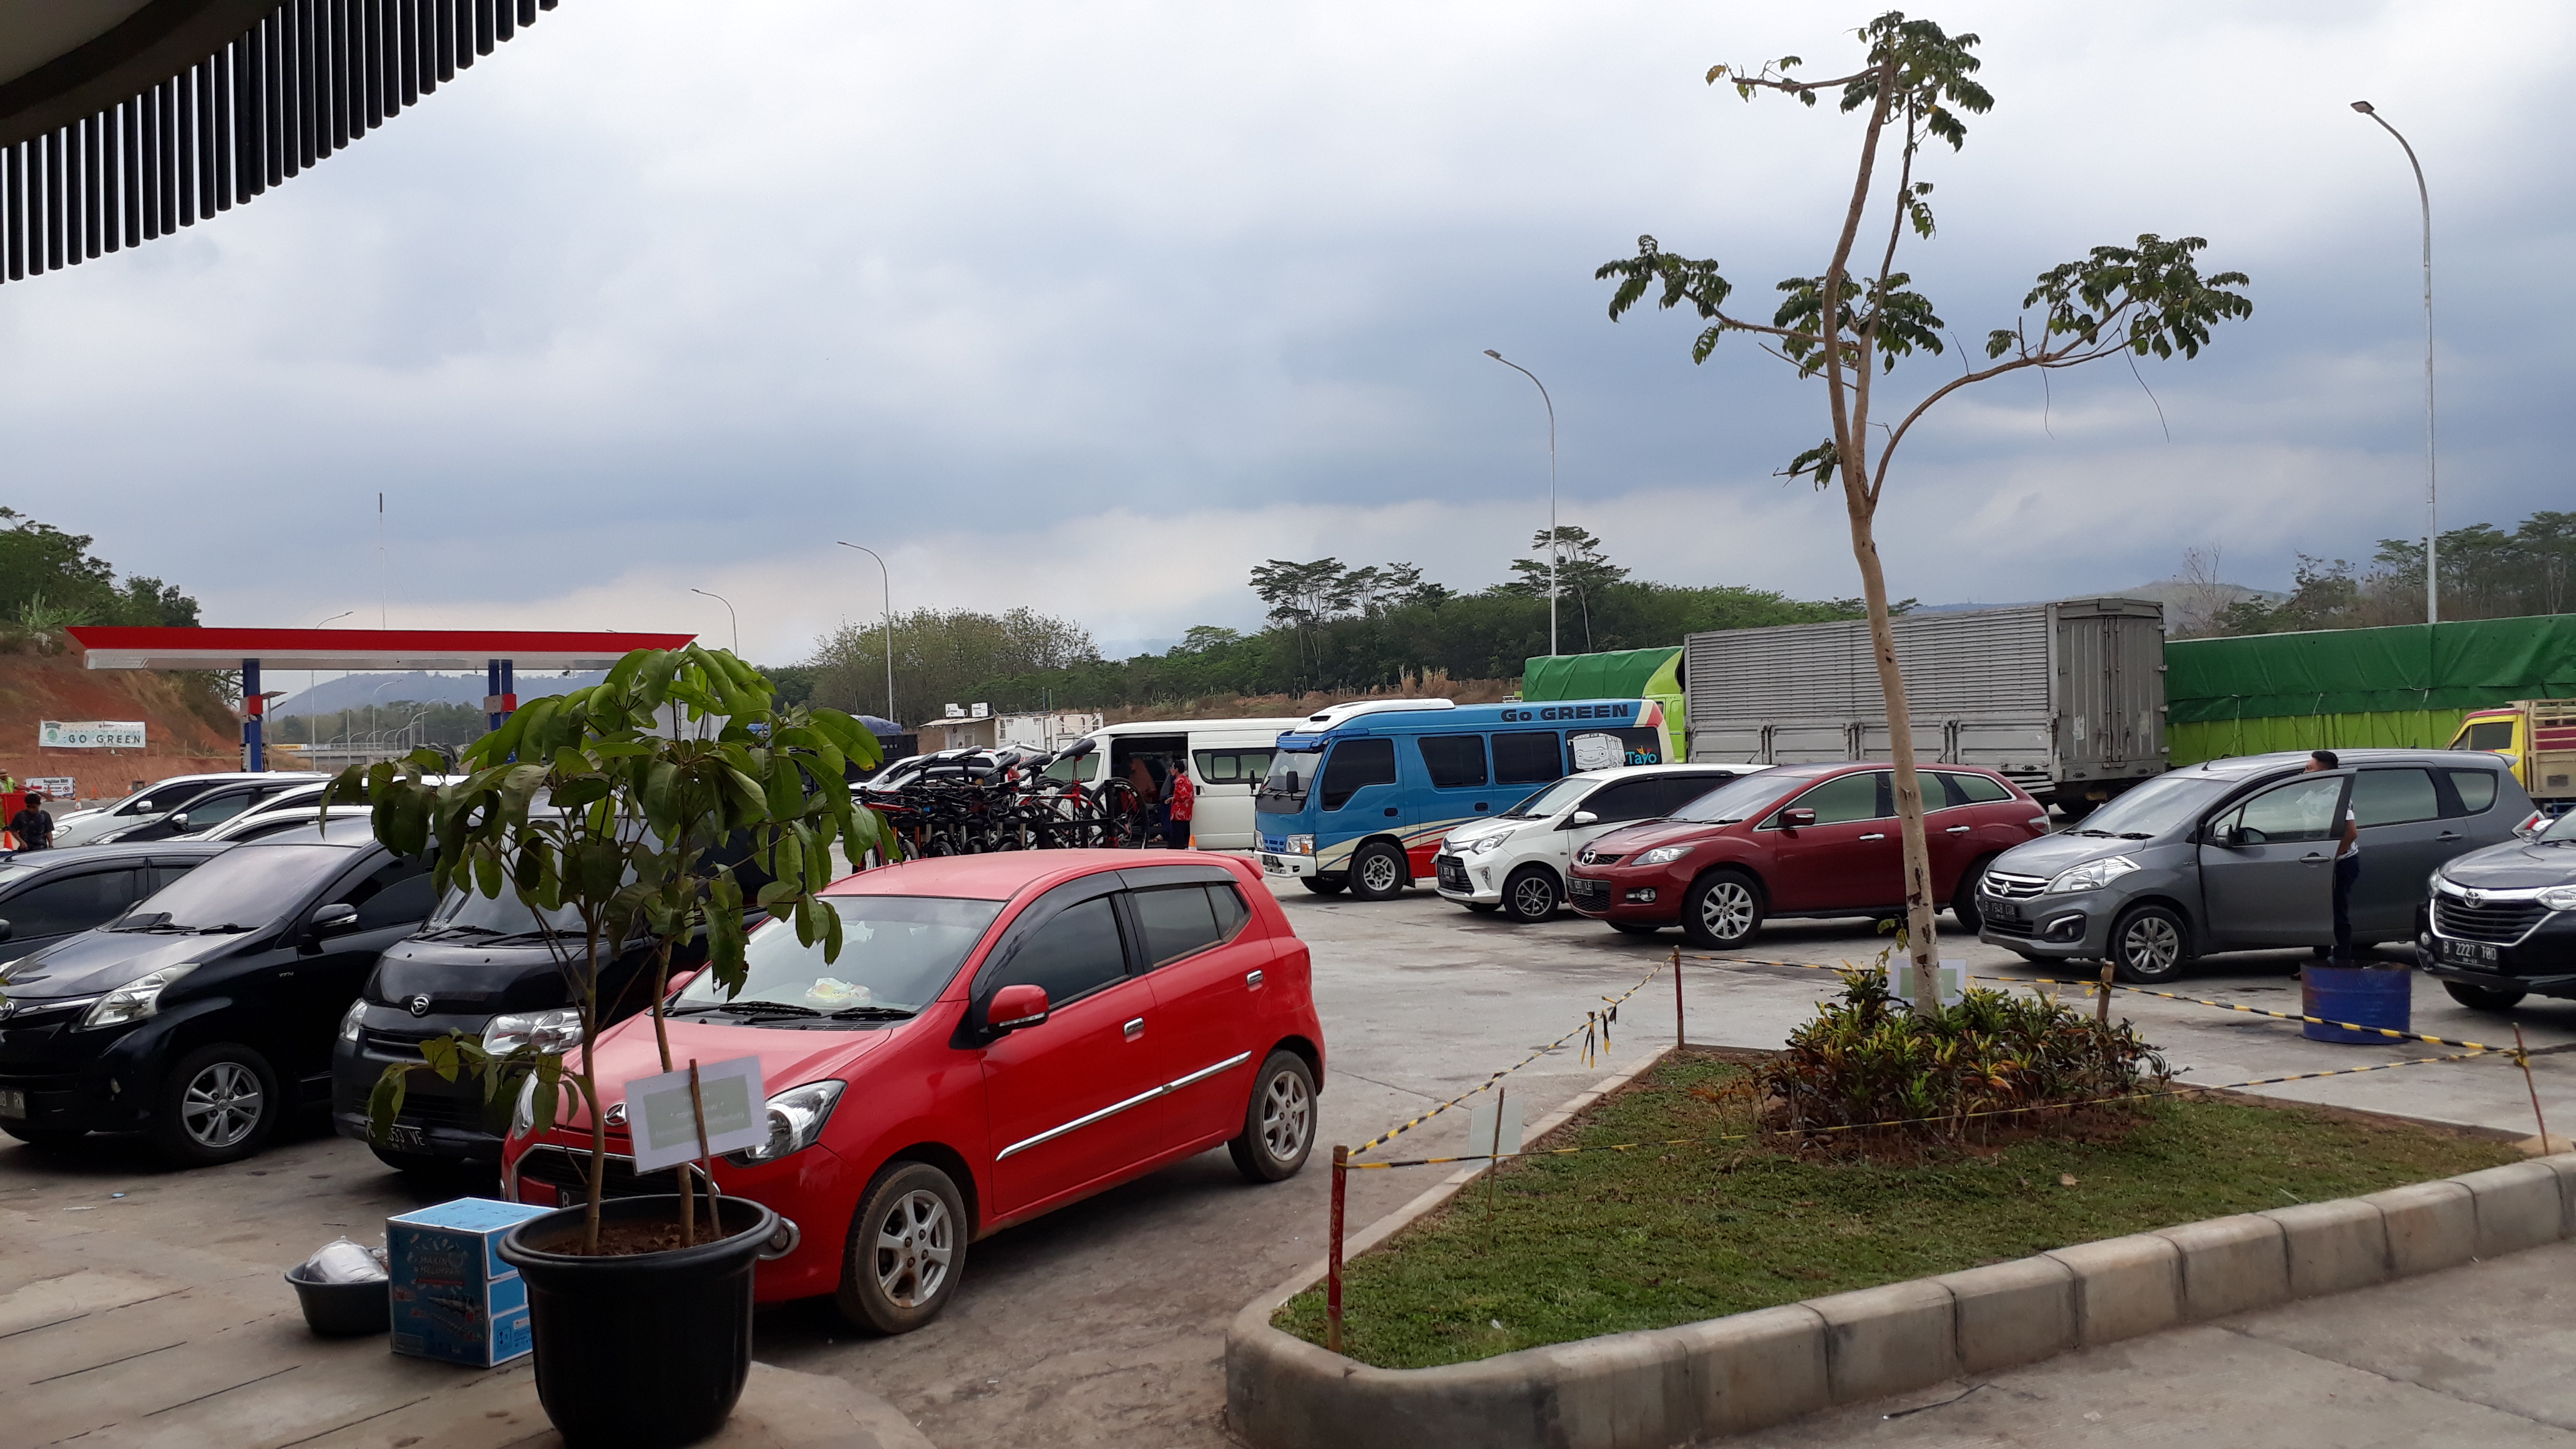 Tarif Dan Rute Tol Trans Jawa 2019 Serta Ketersediaan Rest Area Saat Ini